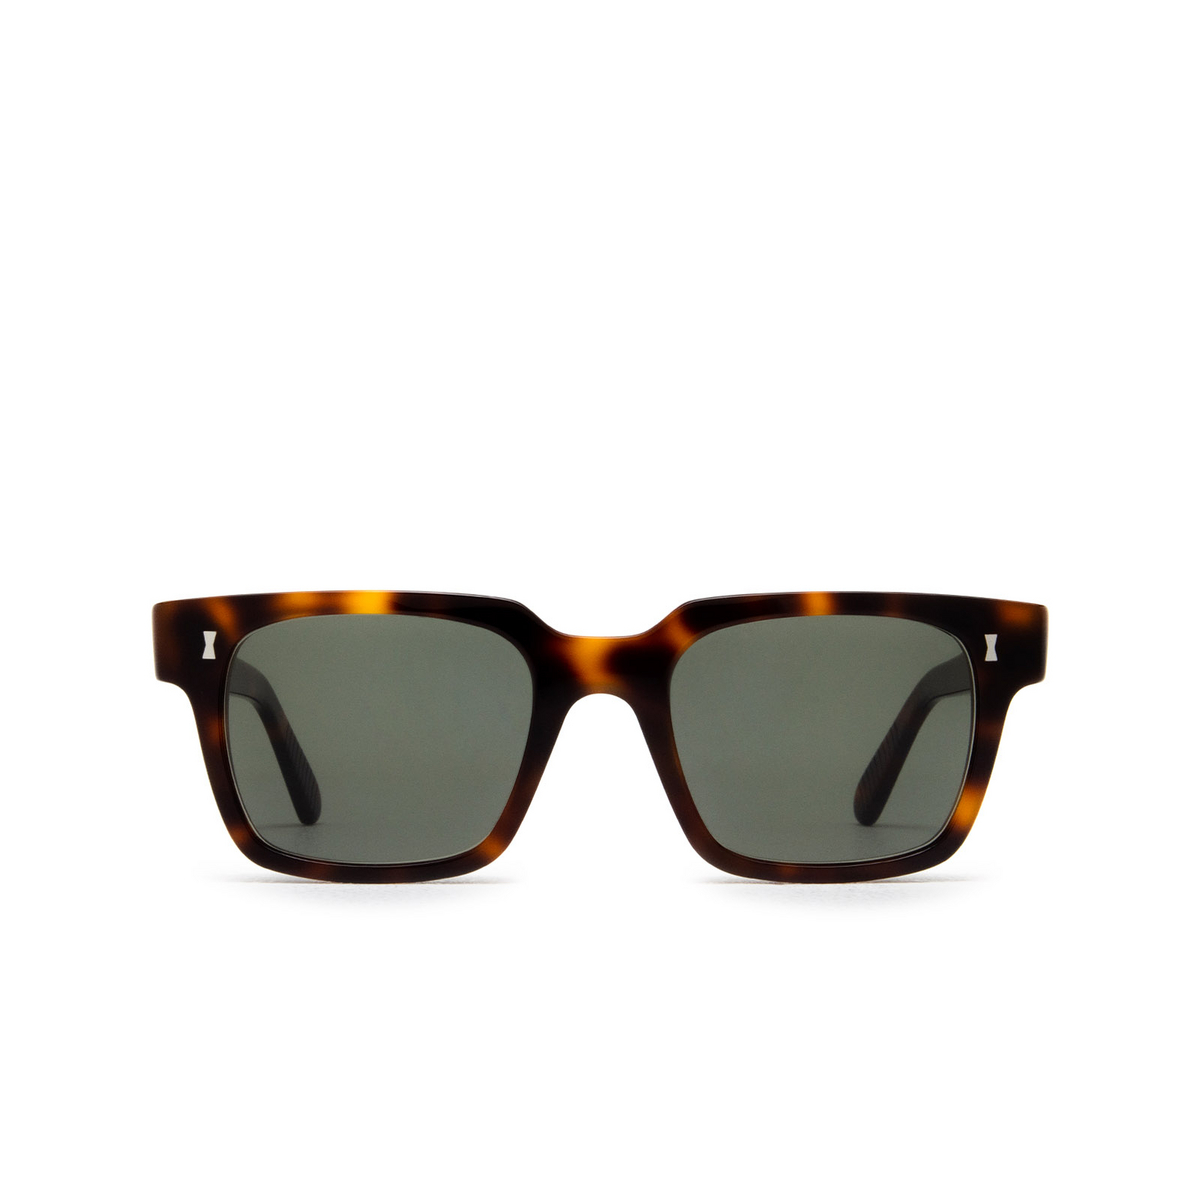 Cubitts PANTON Sunglasses PAN-R-DAR Dark Turtle - front view